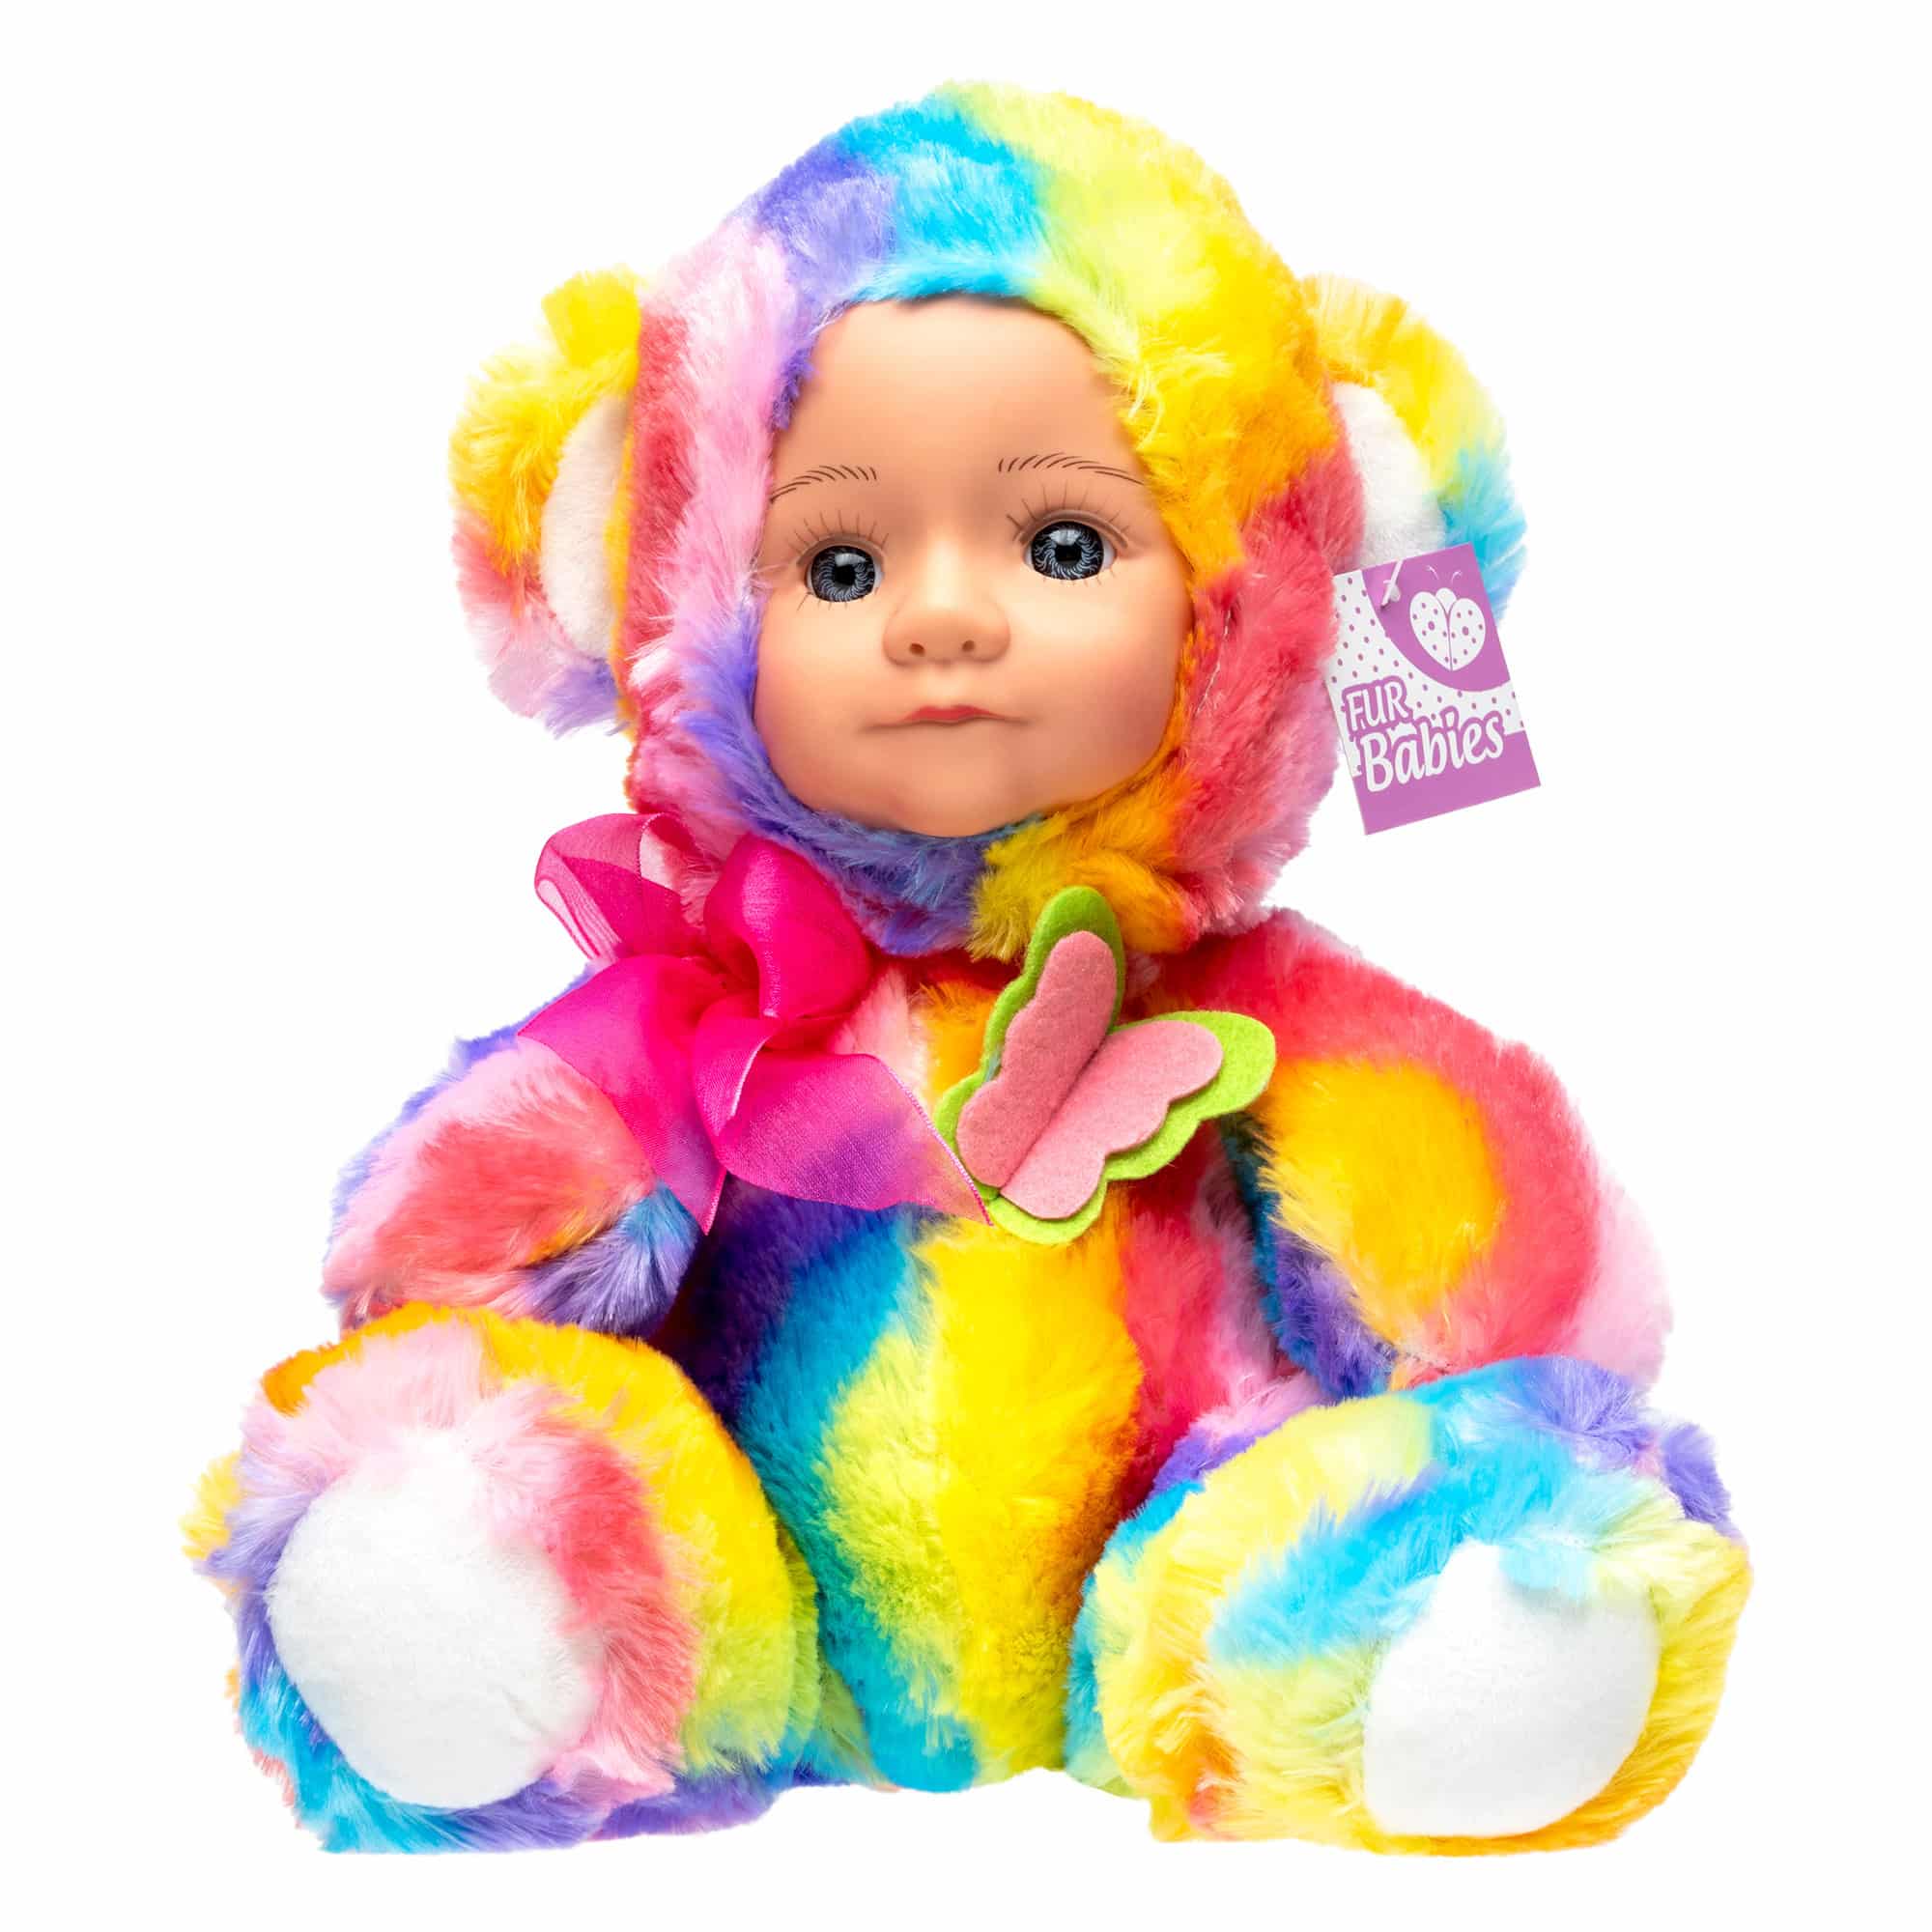 Fur Babies - 24cm Plush Doll - Buttons